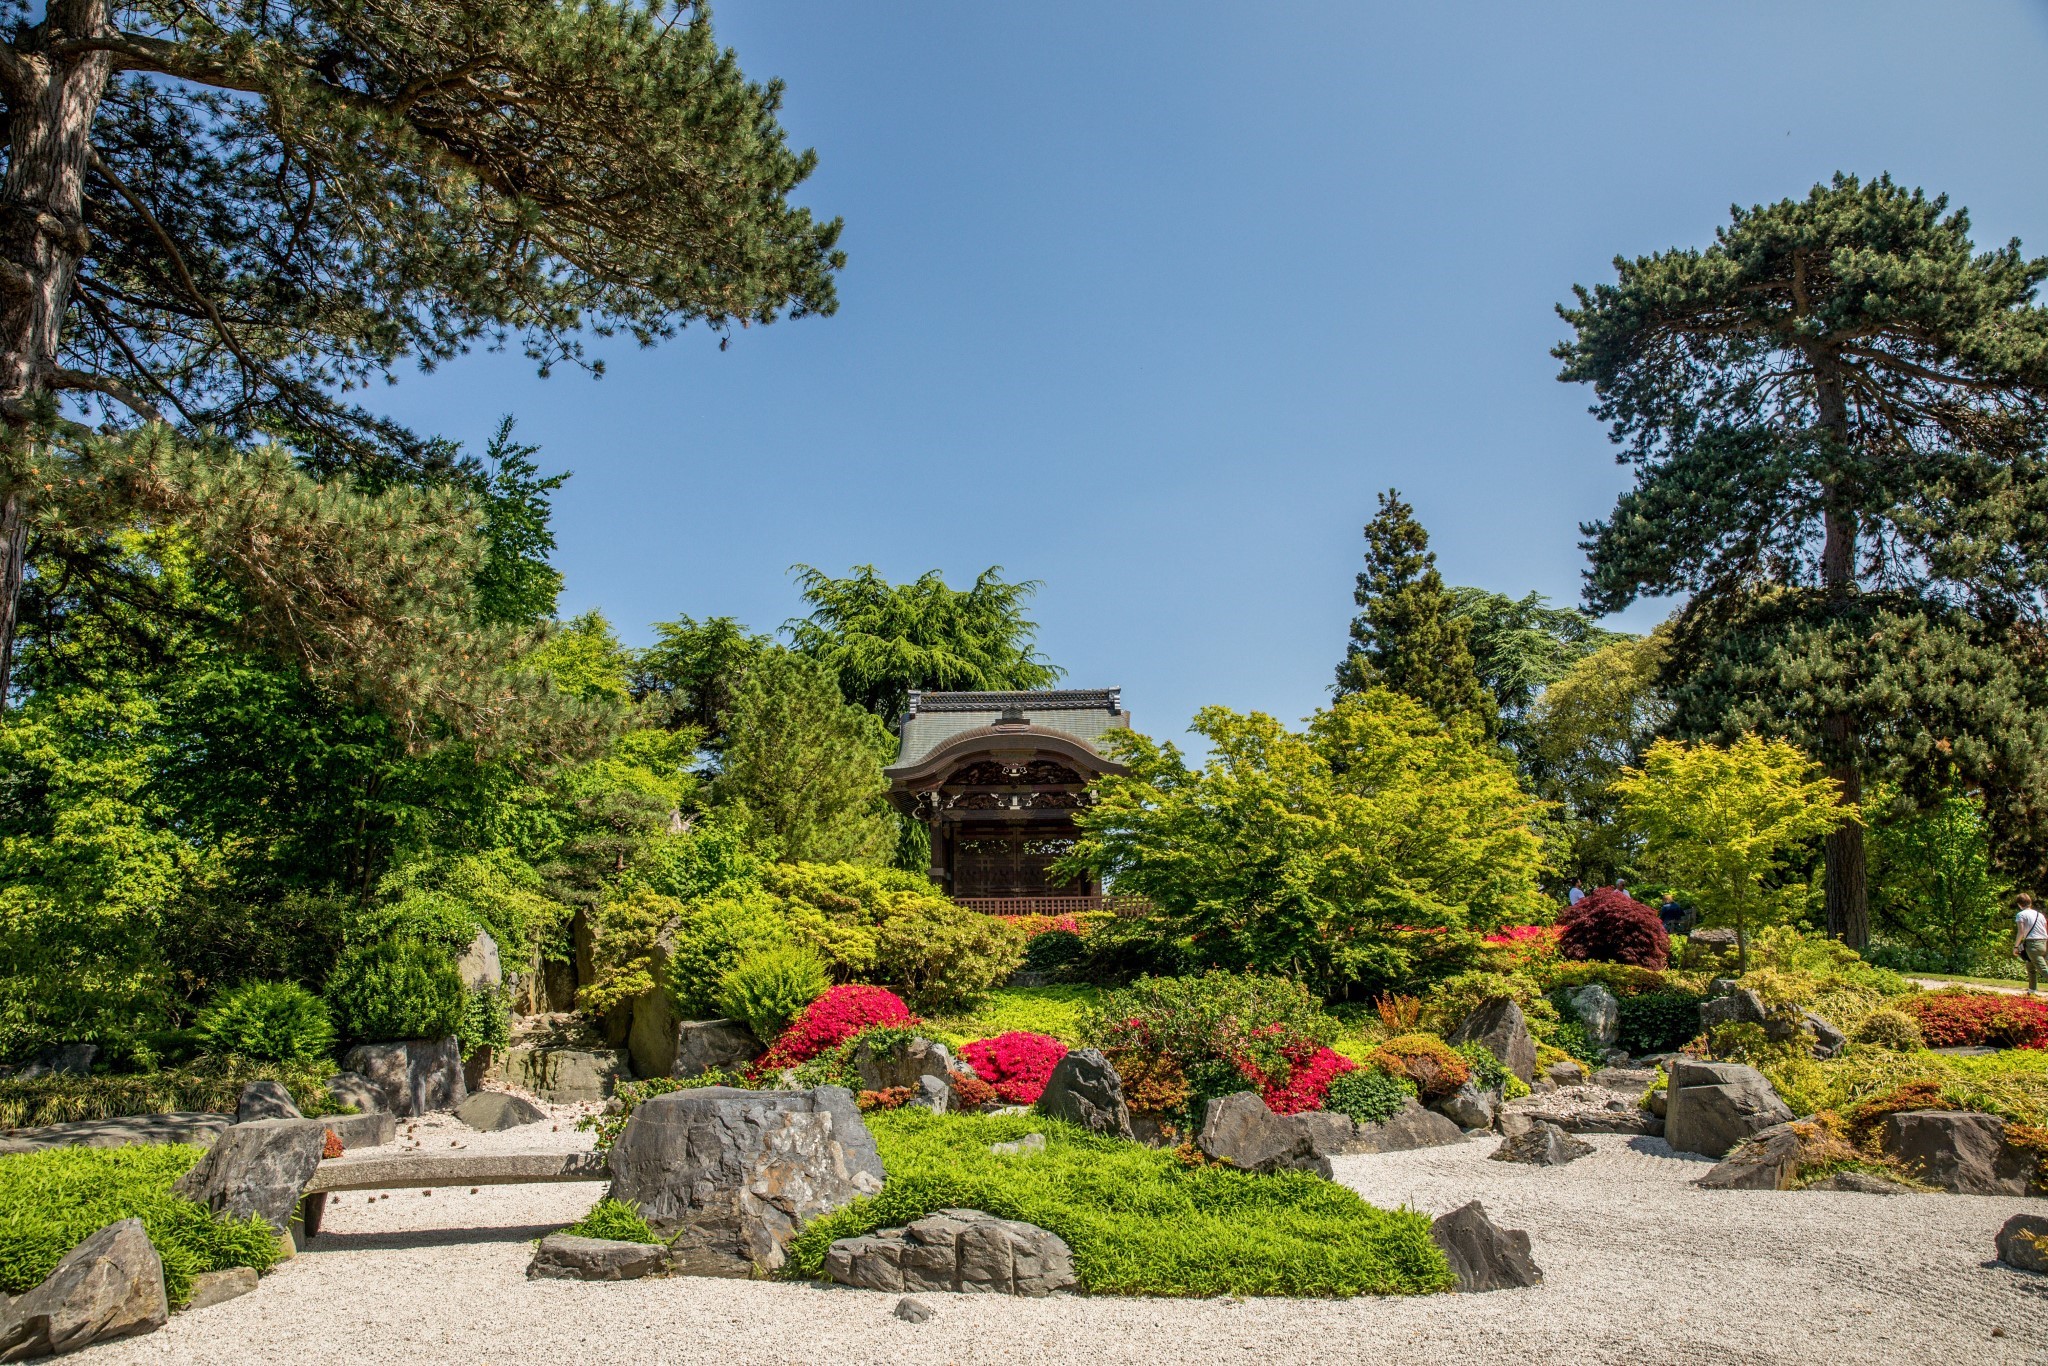 Japanische Landschaft - Danielas Blog #18 – The Royal Botanic Gardens Kew